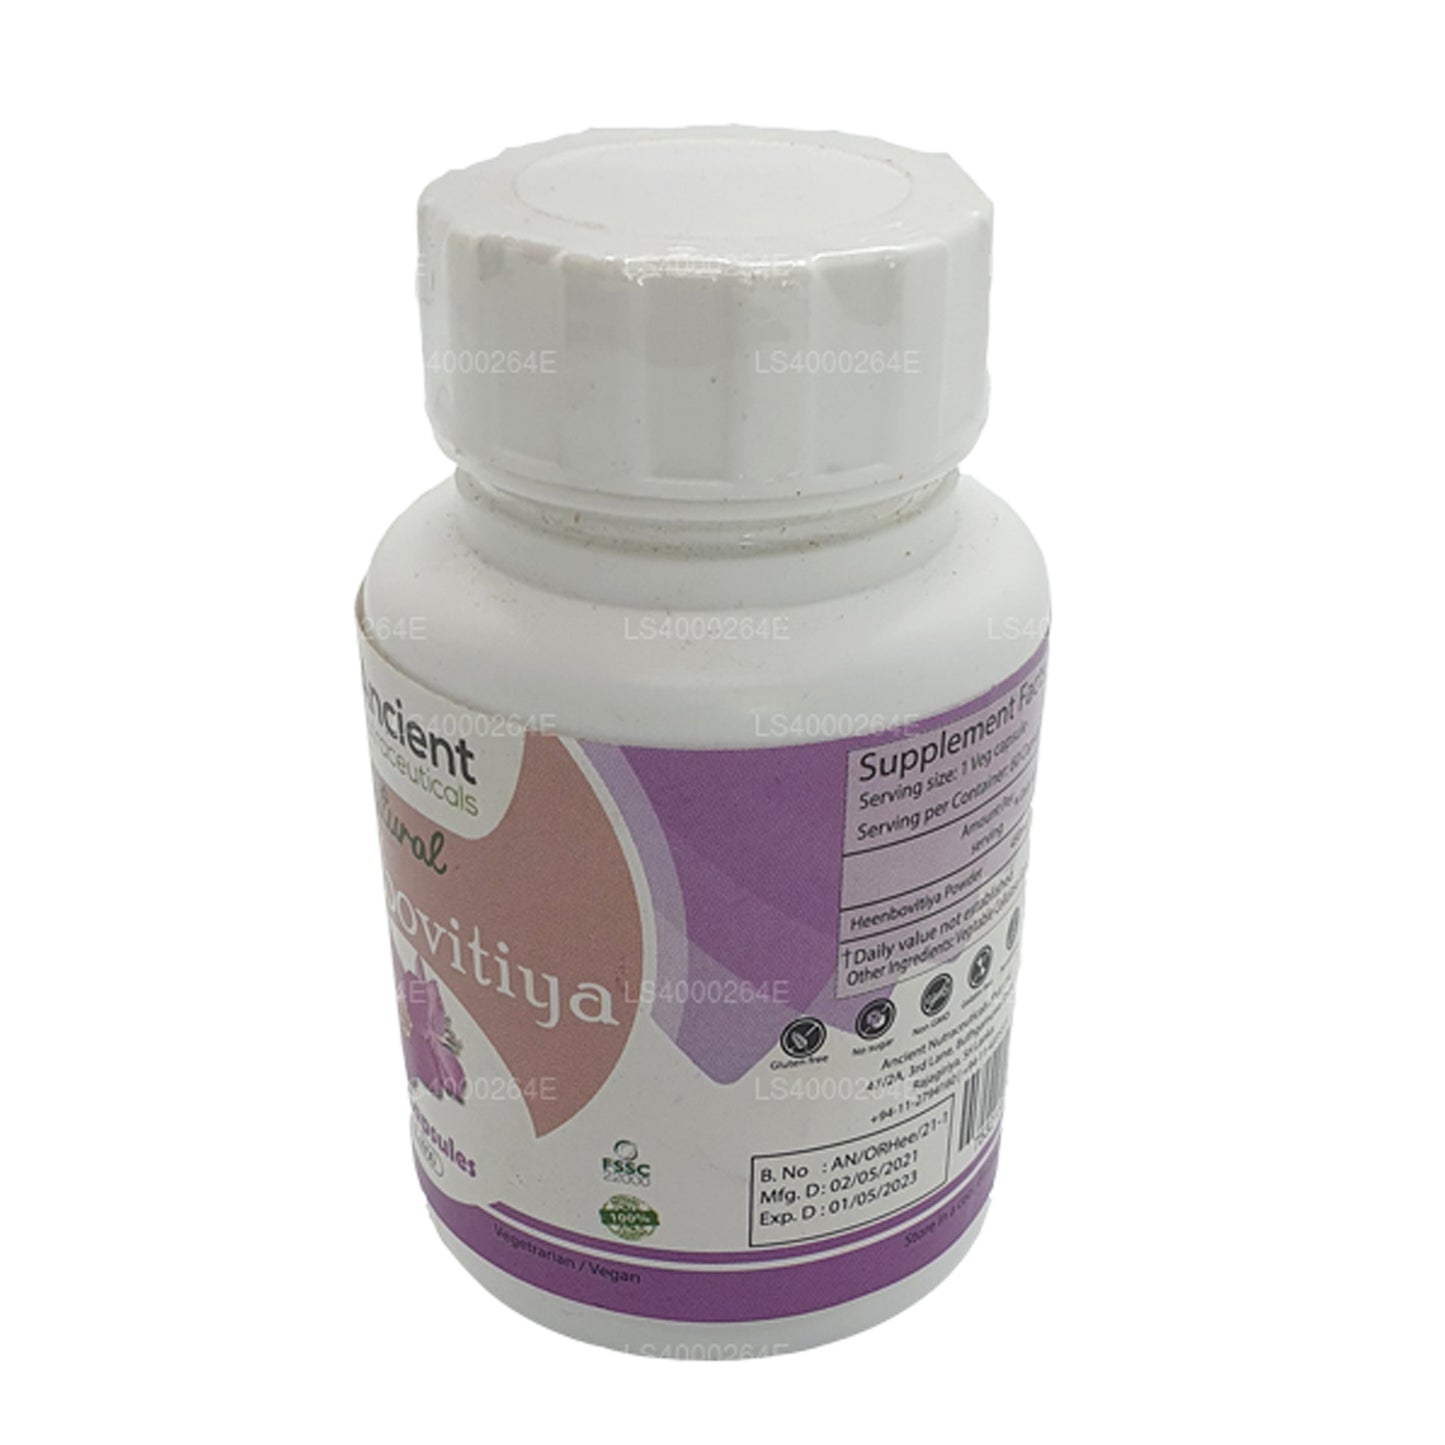 Bovitiya de poule biologique Ancient Nutraceuticals (capsules végétales de 60 g x 650 mg)